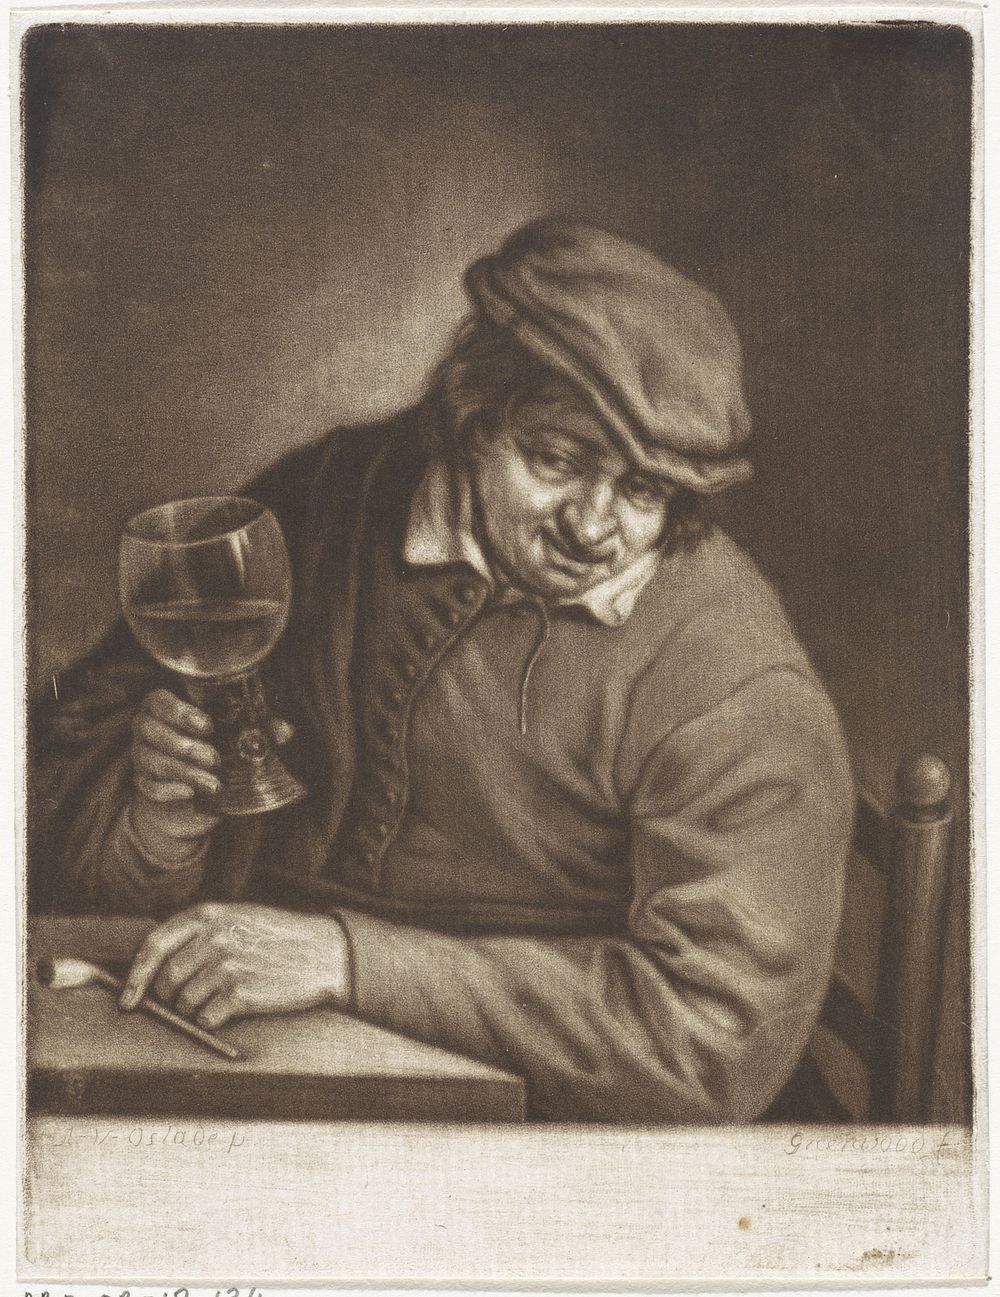 Man met een roemer (1739 - 1792) by John Greenwood and Adriaen van Ostade